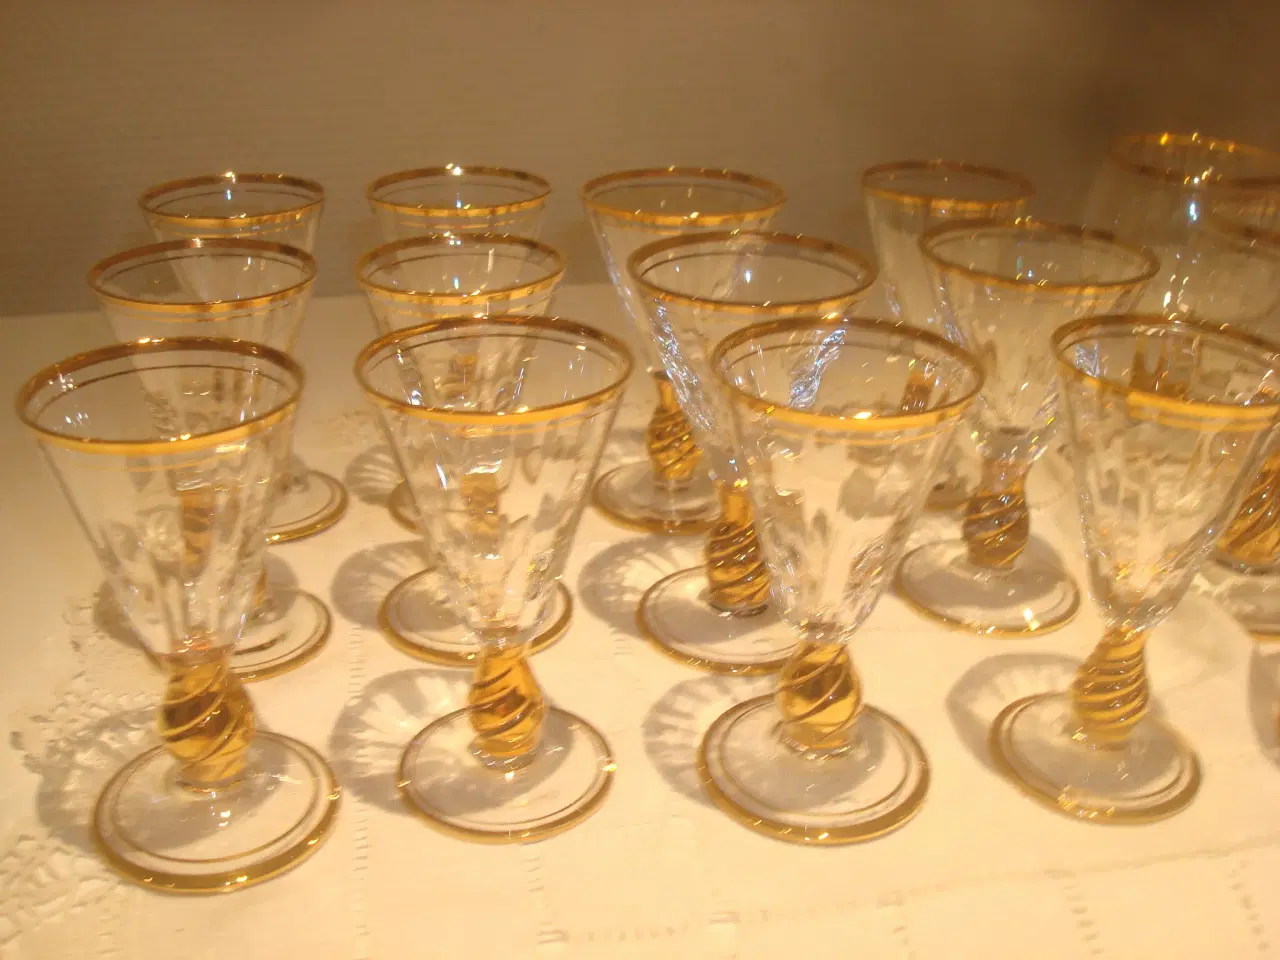 Billede 2 - IDA glas, Holmegård, snaps og cognac